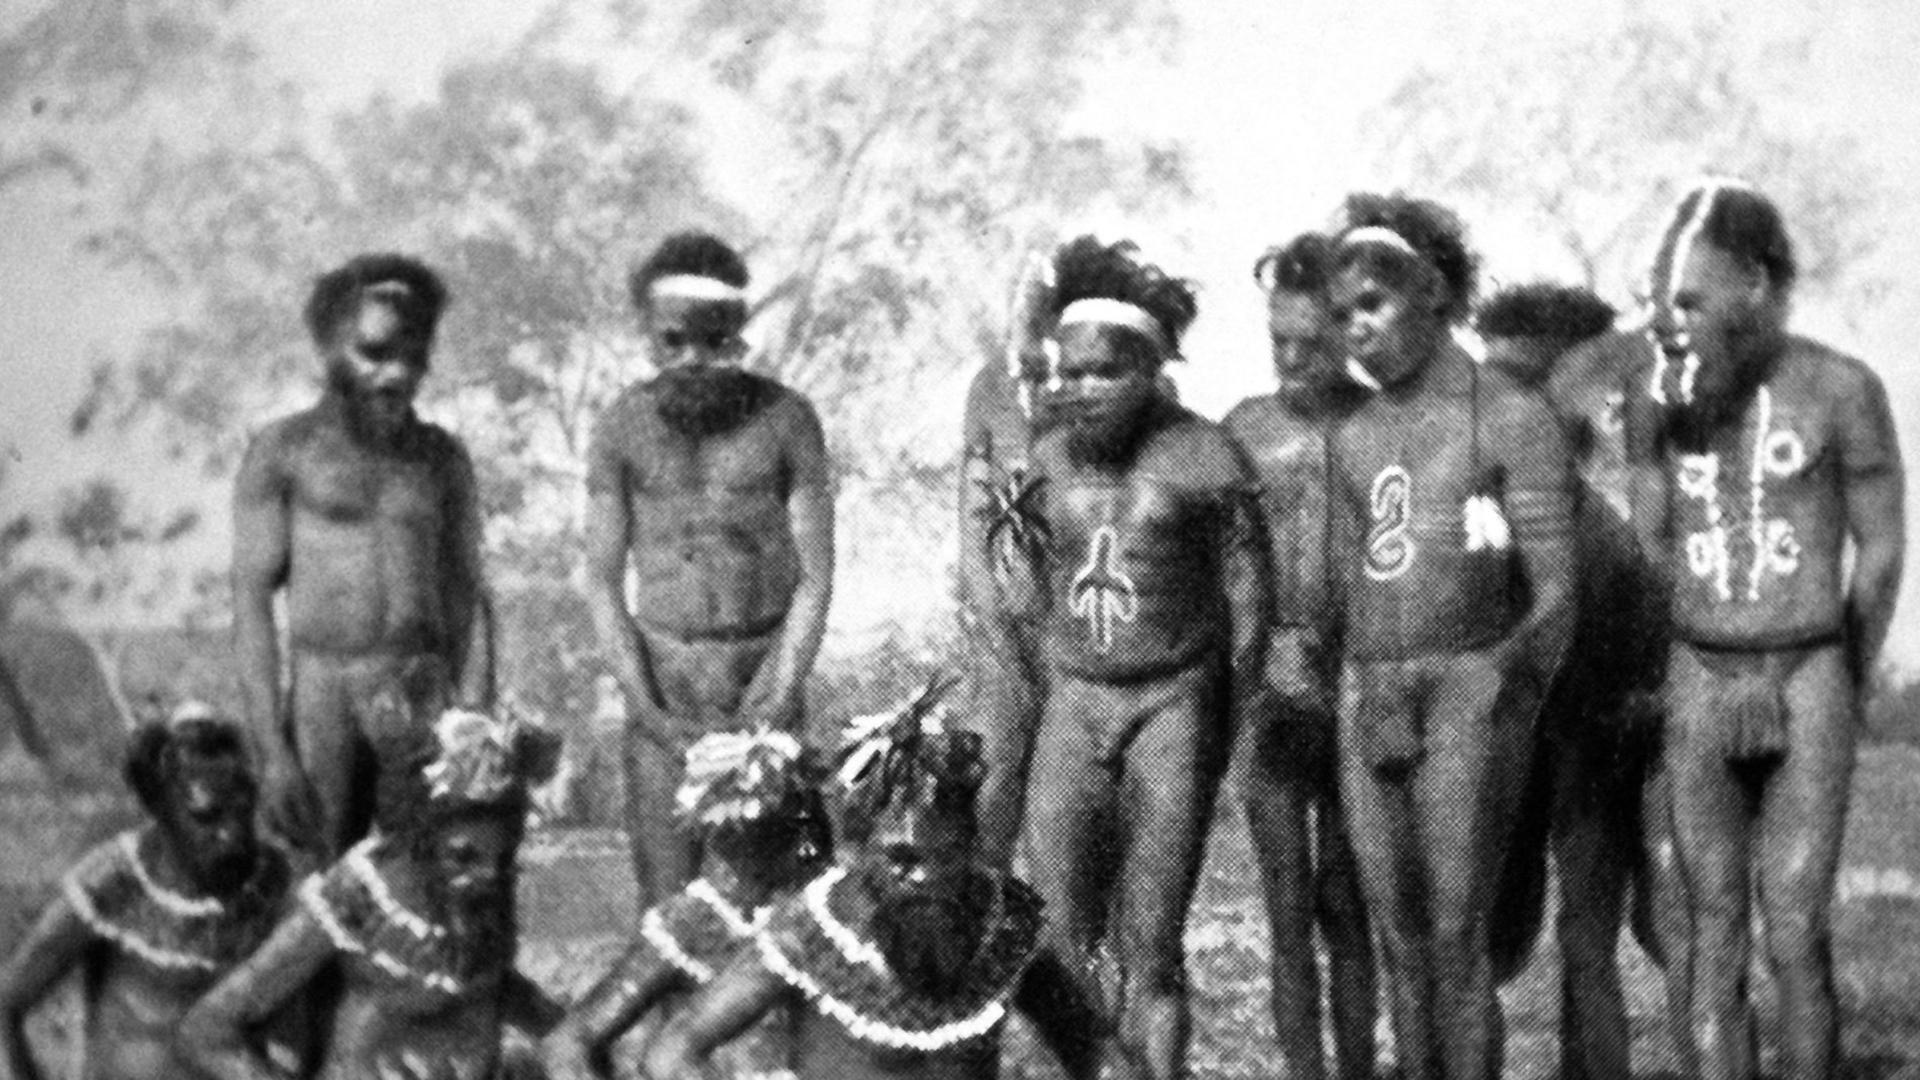 Australische Ureinwohner bei einer religiösen Zeremonie, aufgenommen in den 1920er-Jahren.